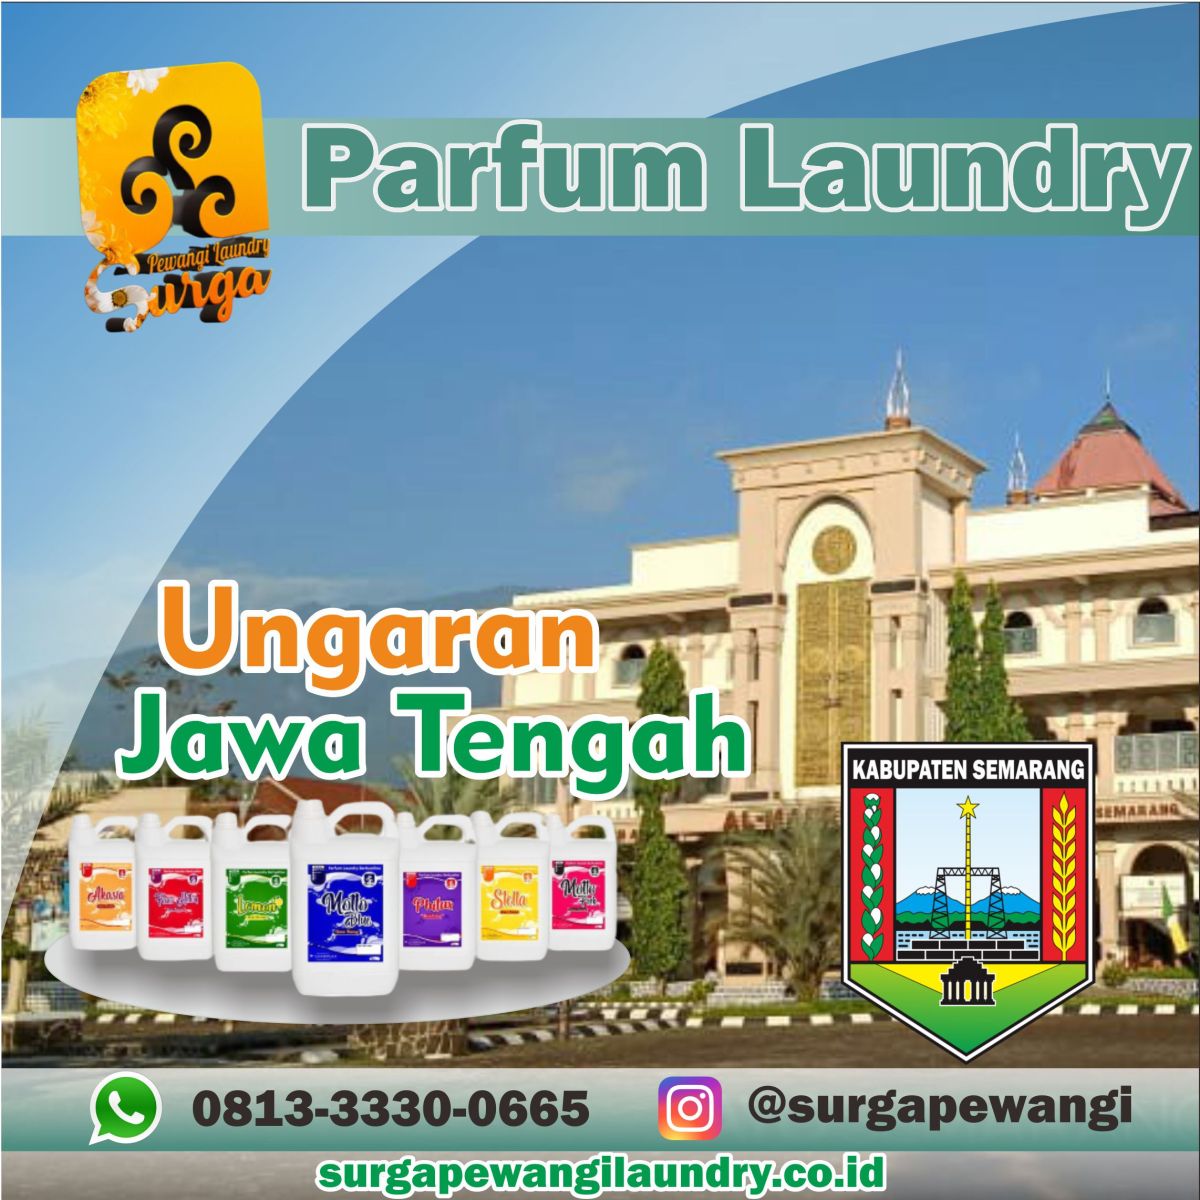 Parfum Laundry Kabupaten Ungaran Jawa Tengah